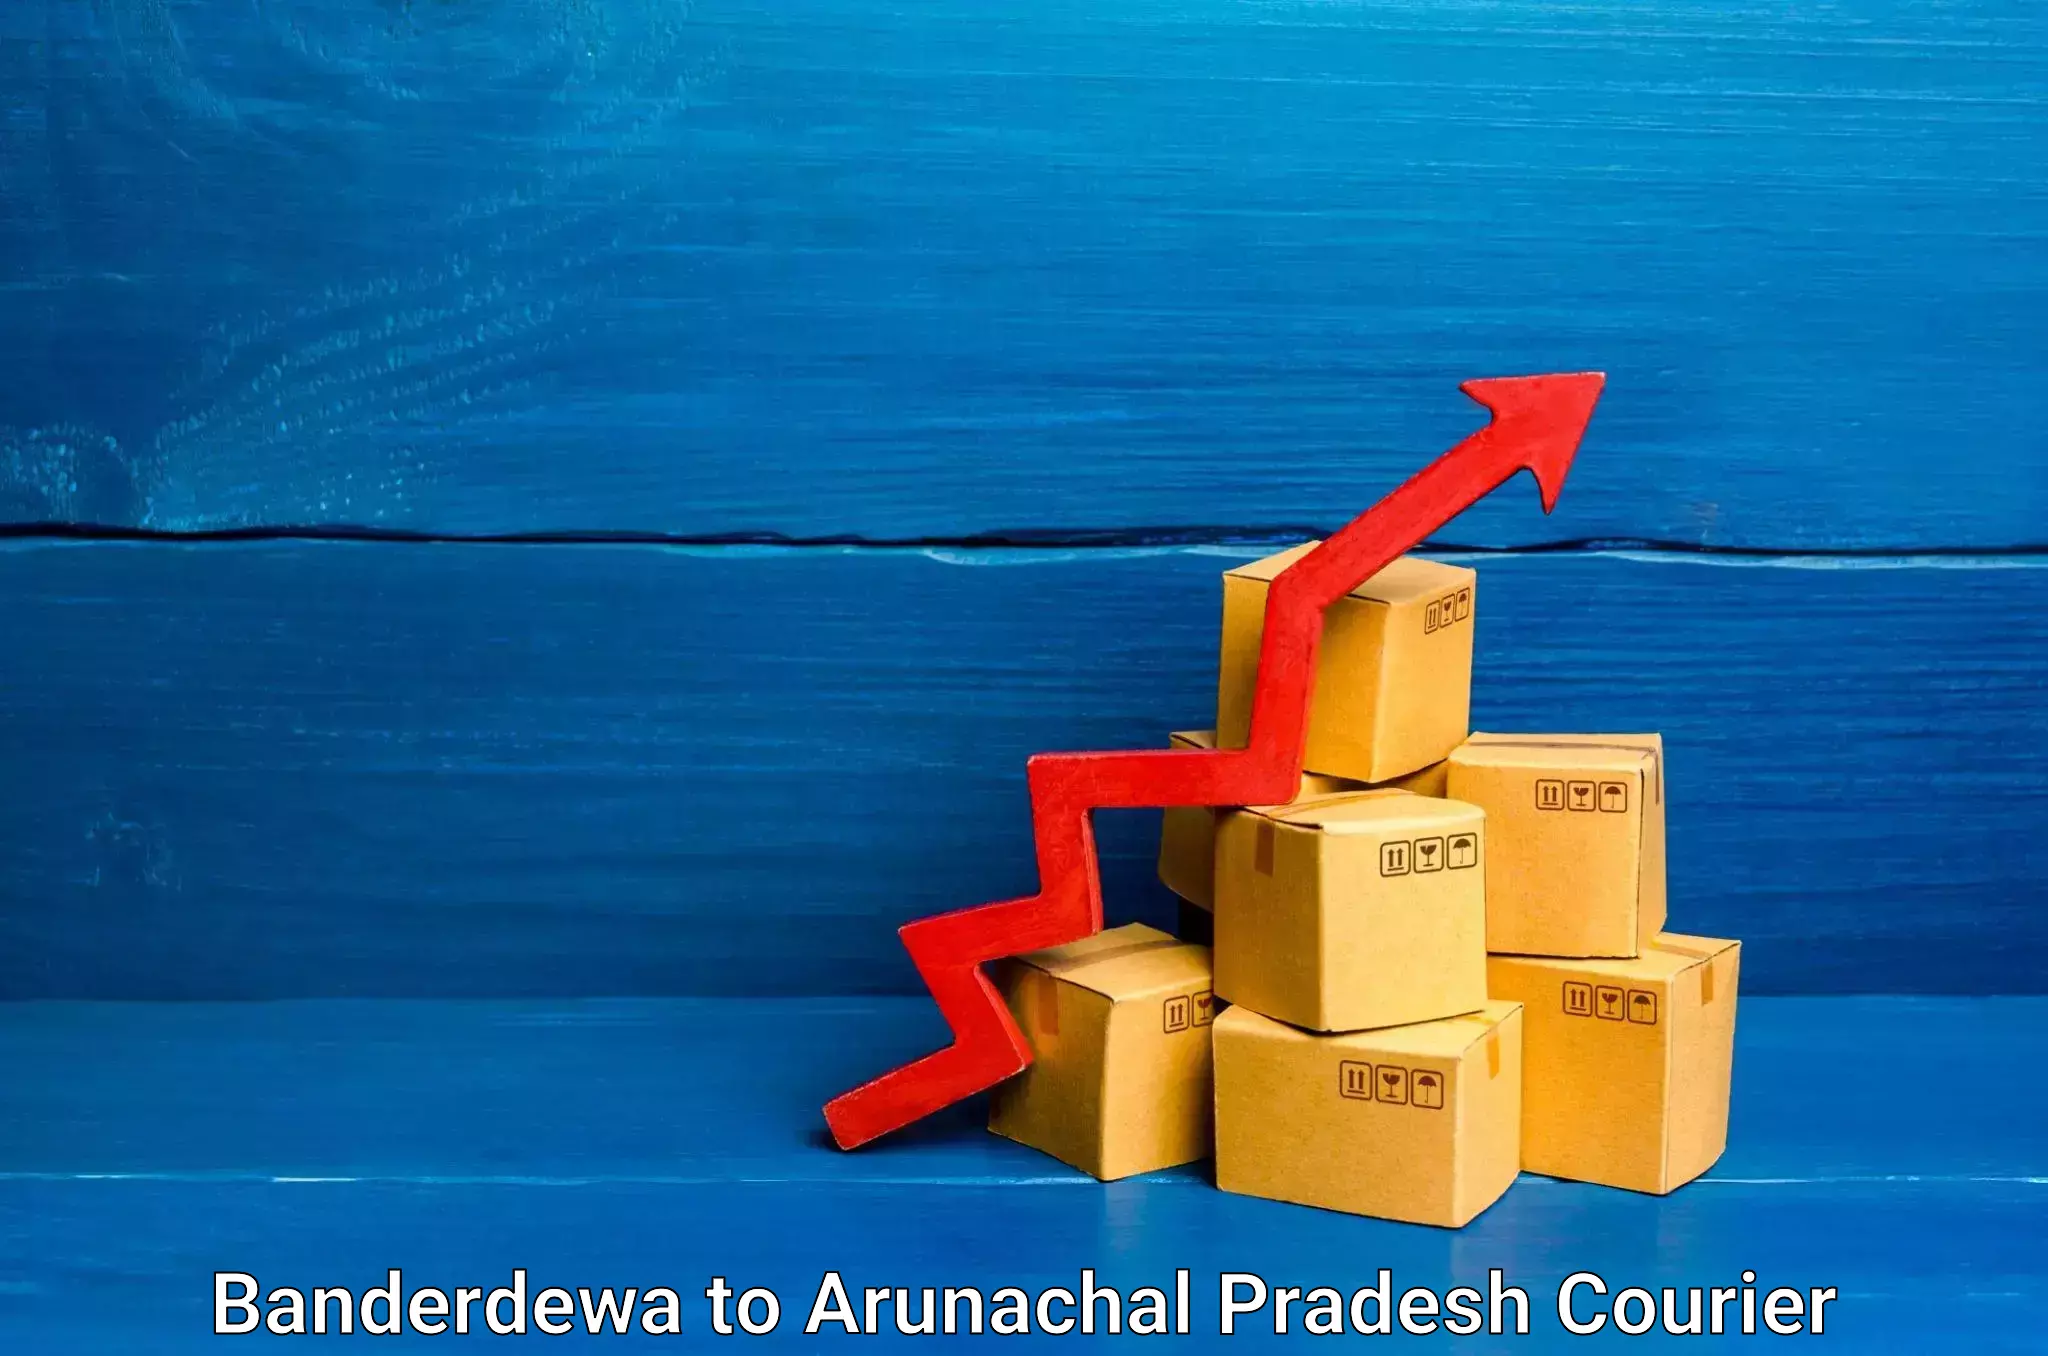 Premium courier solutions in Banderdewa to Arunachal Pradesh